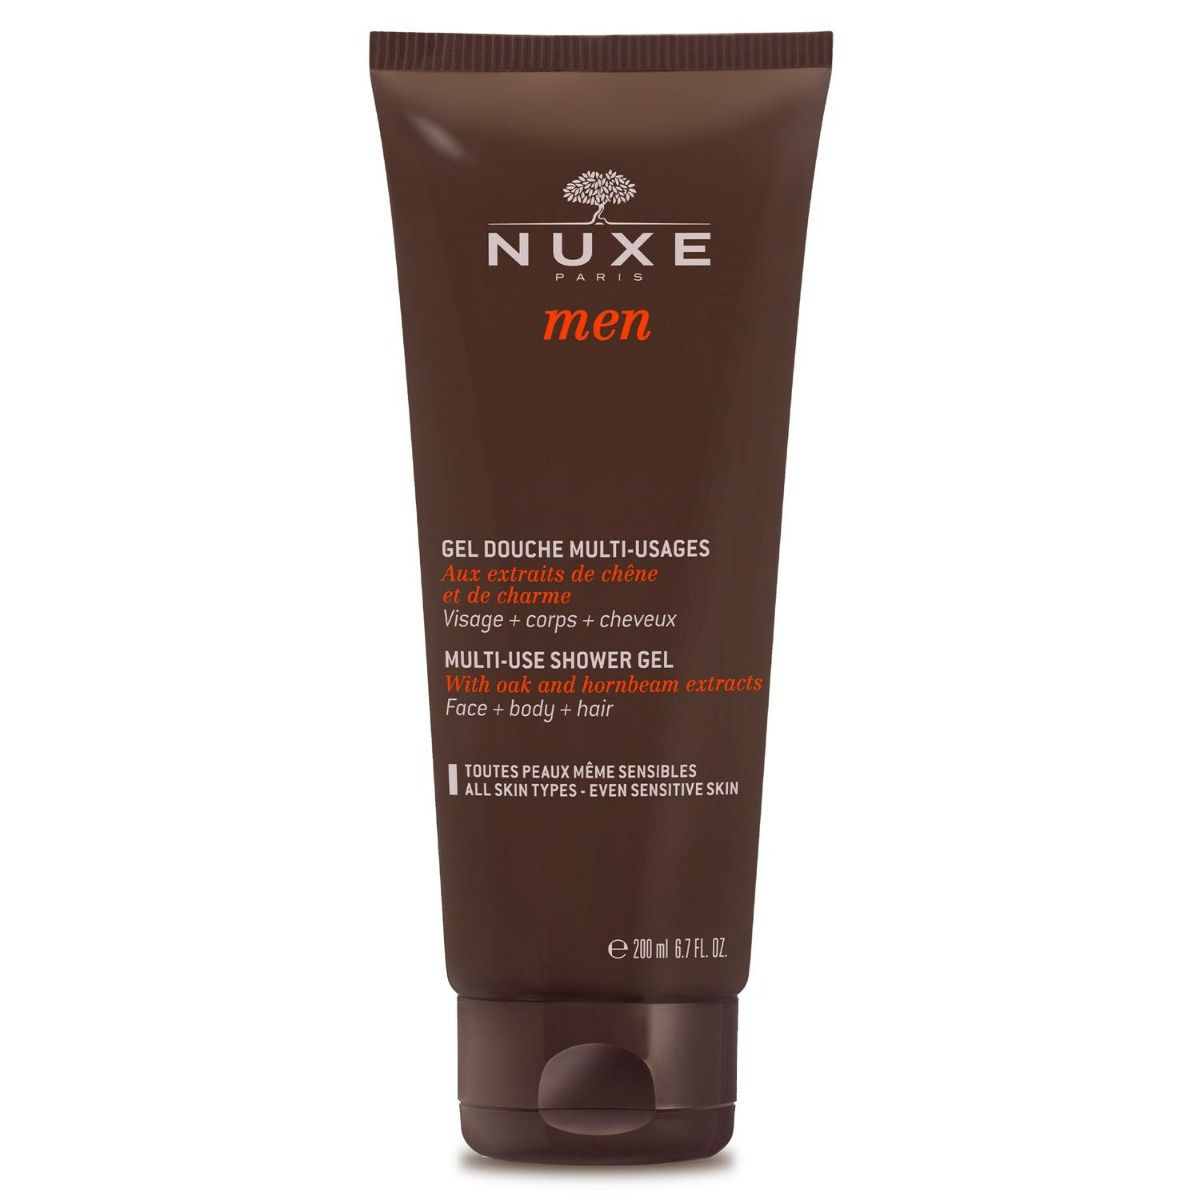 Nuxe Men Gel Douche гель для мытья тела и волос, 200 ml